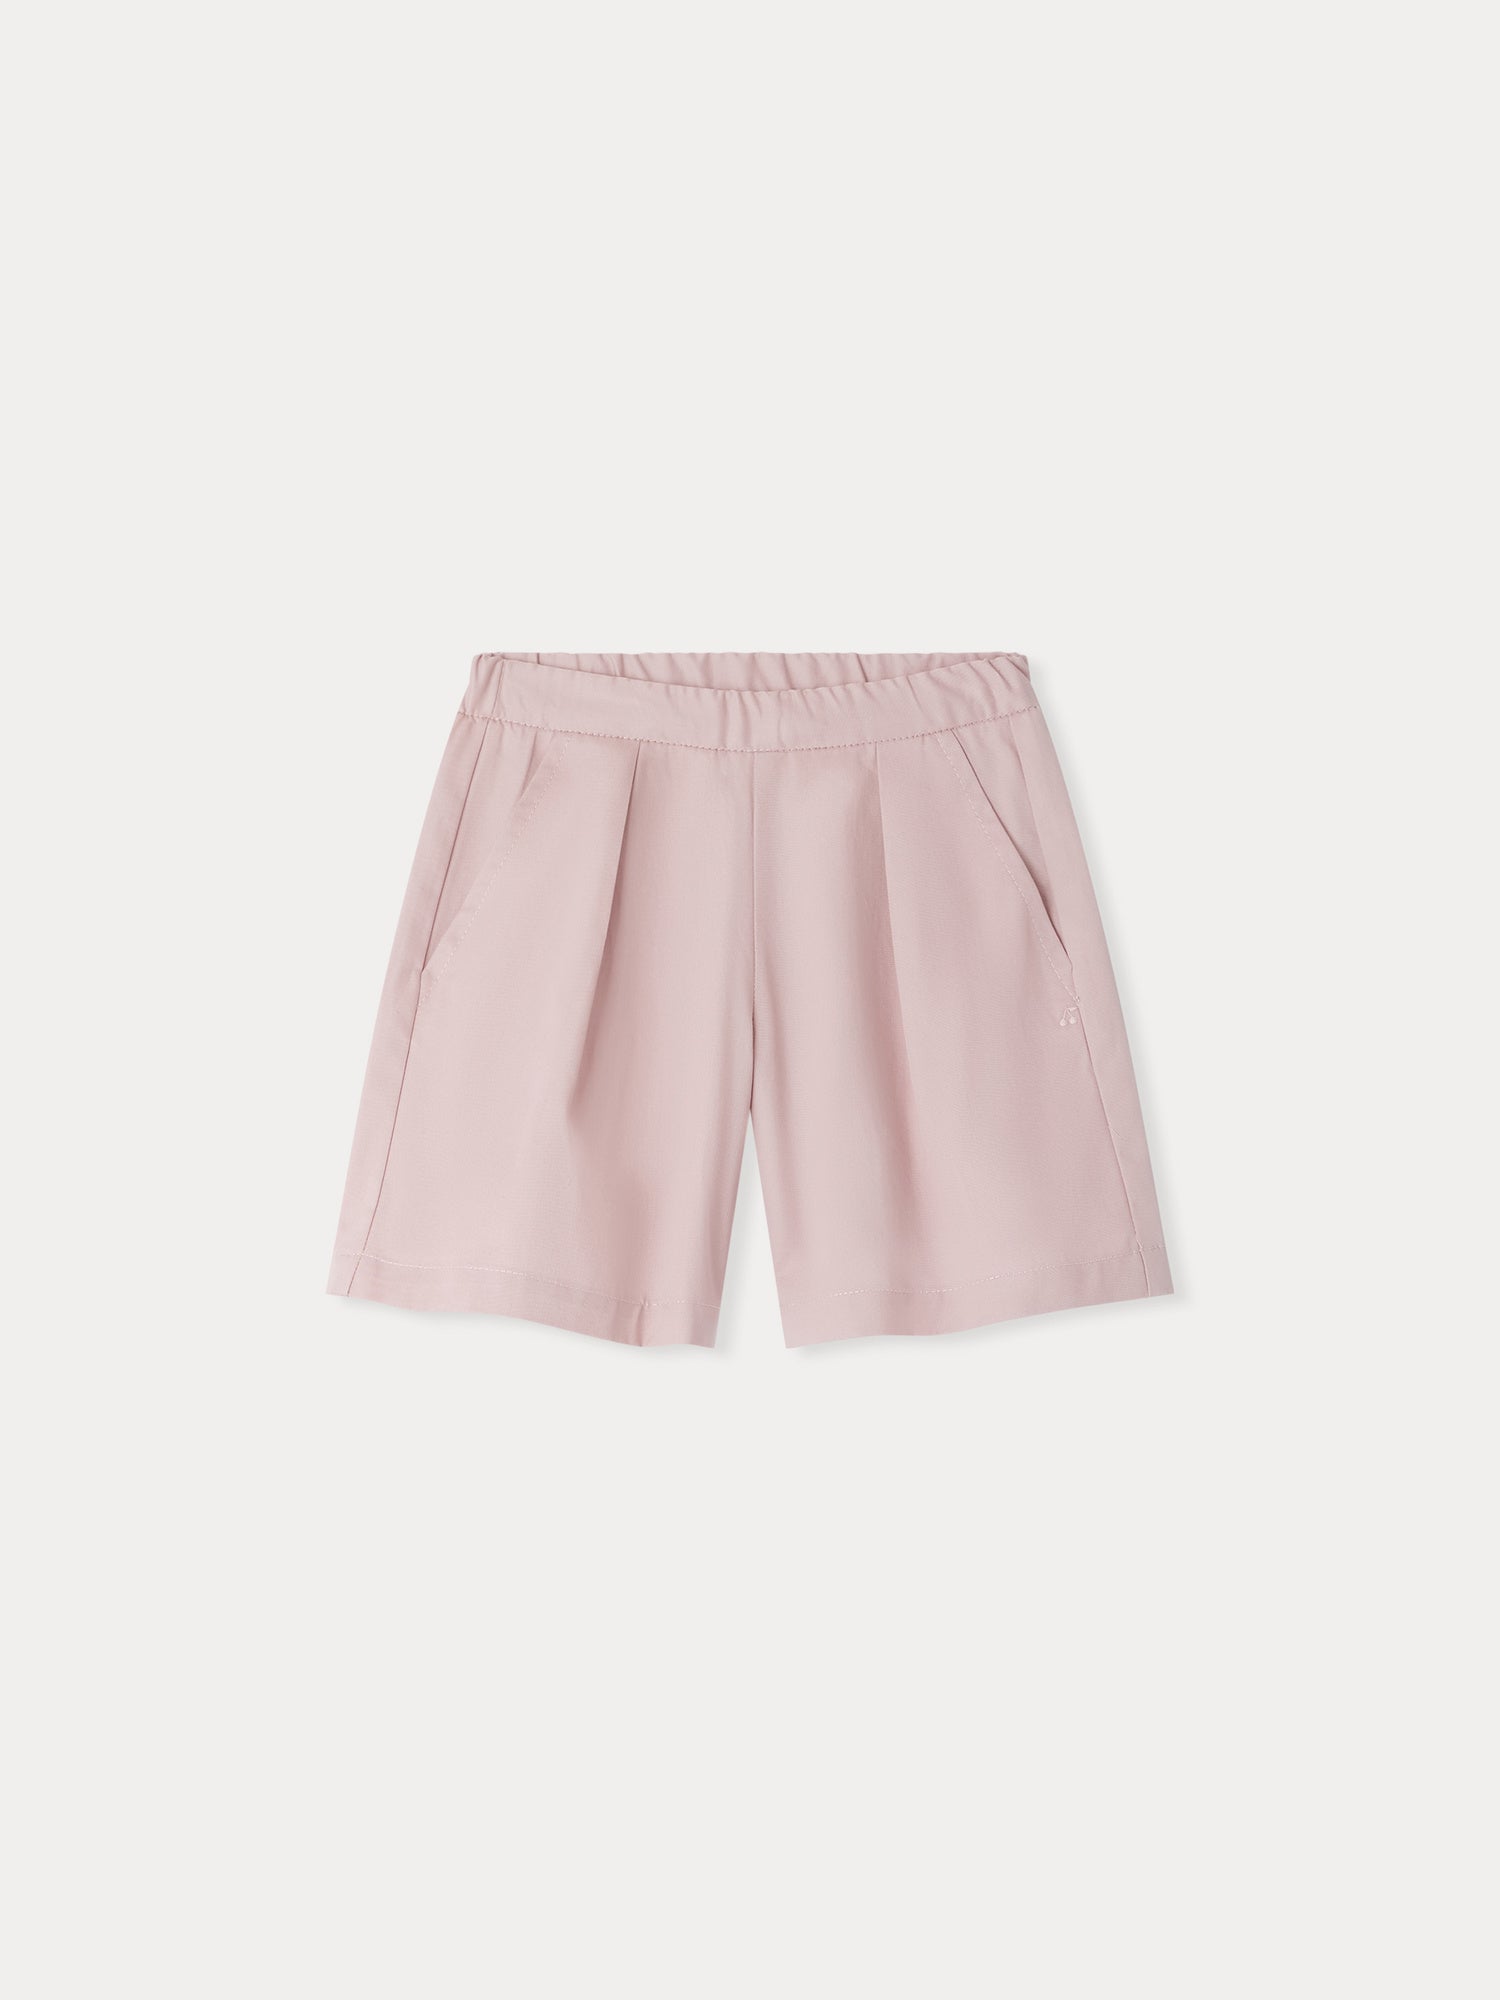 Bonpoint Caroline Cherry-embroidered shorts - Neutrals